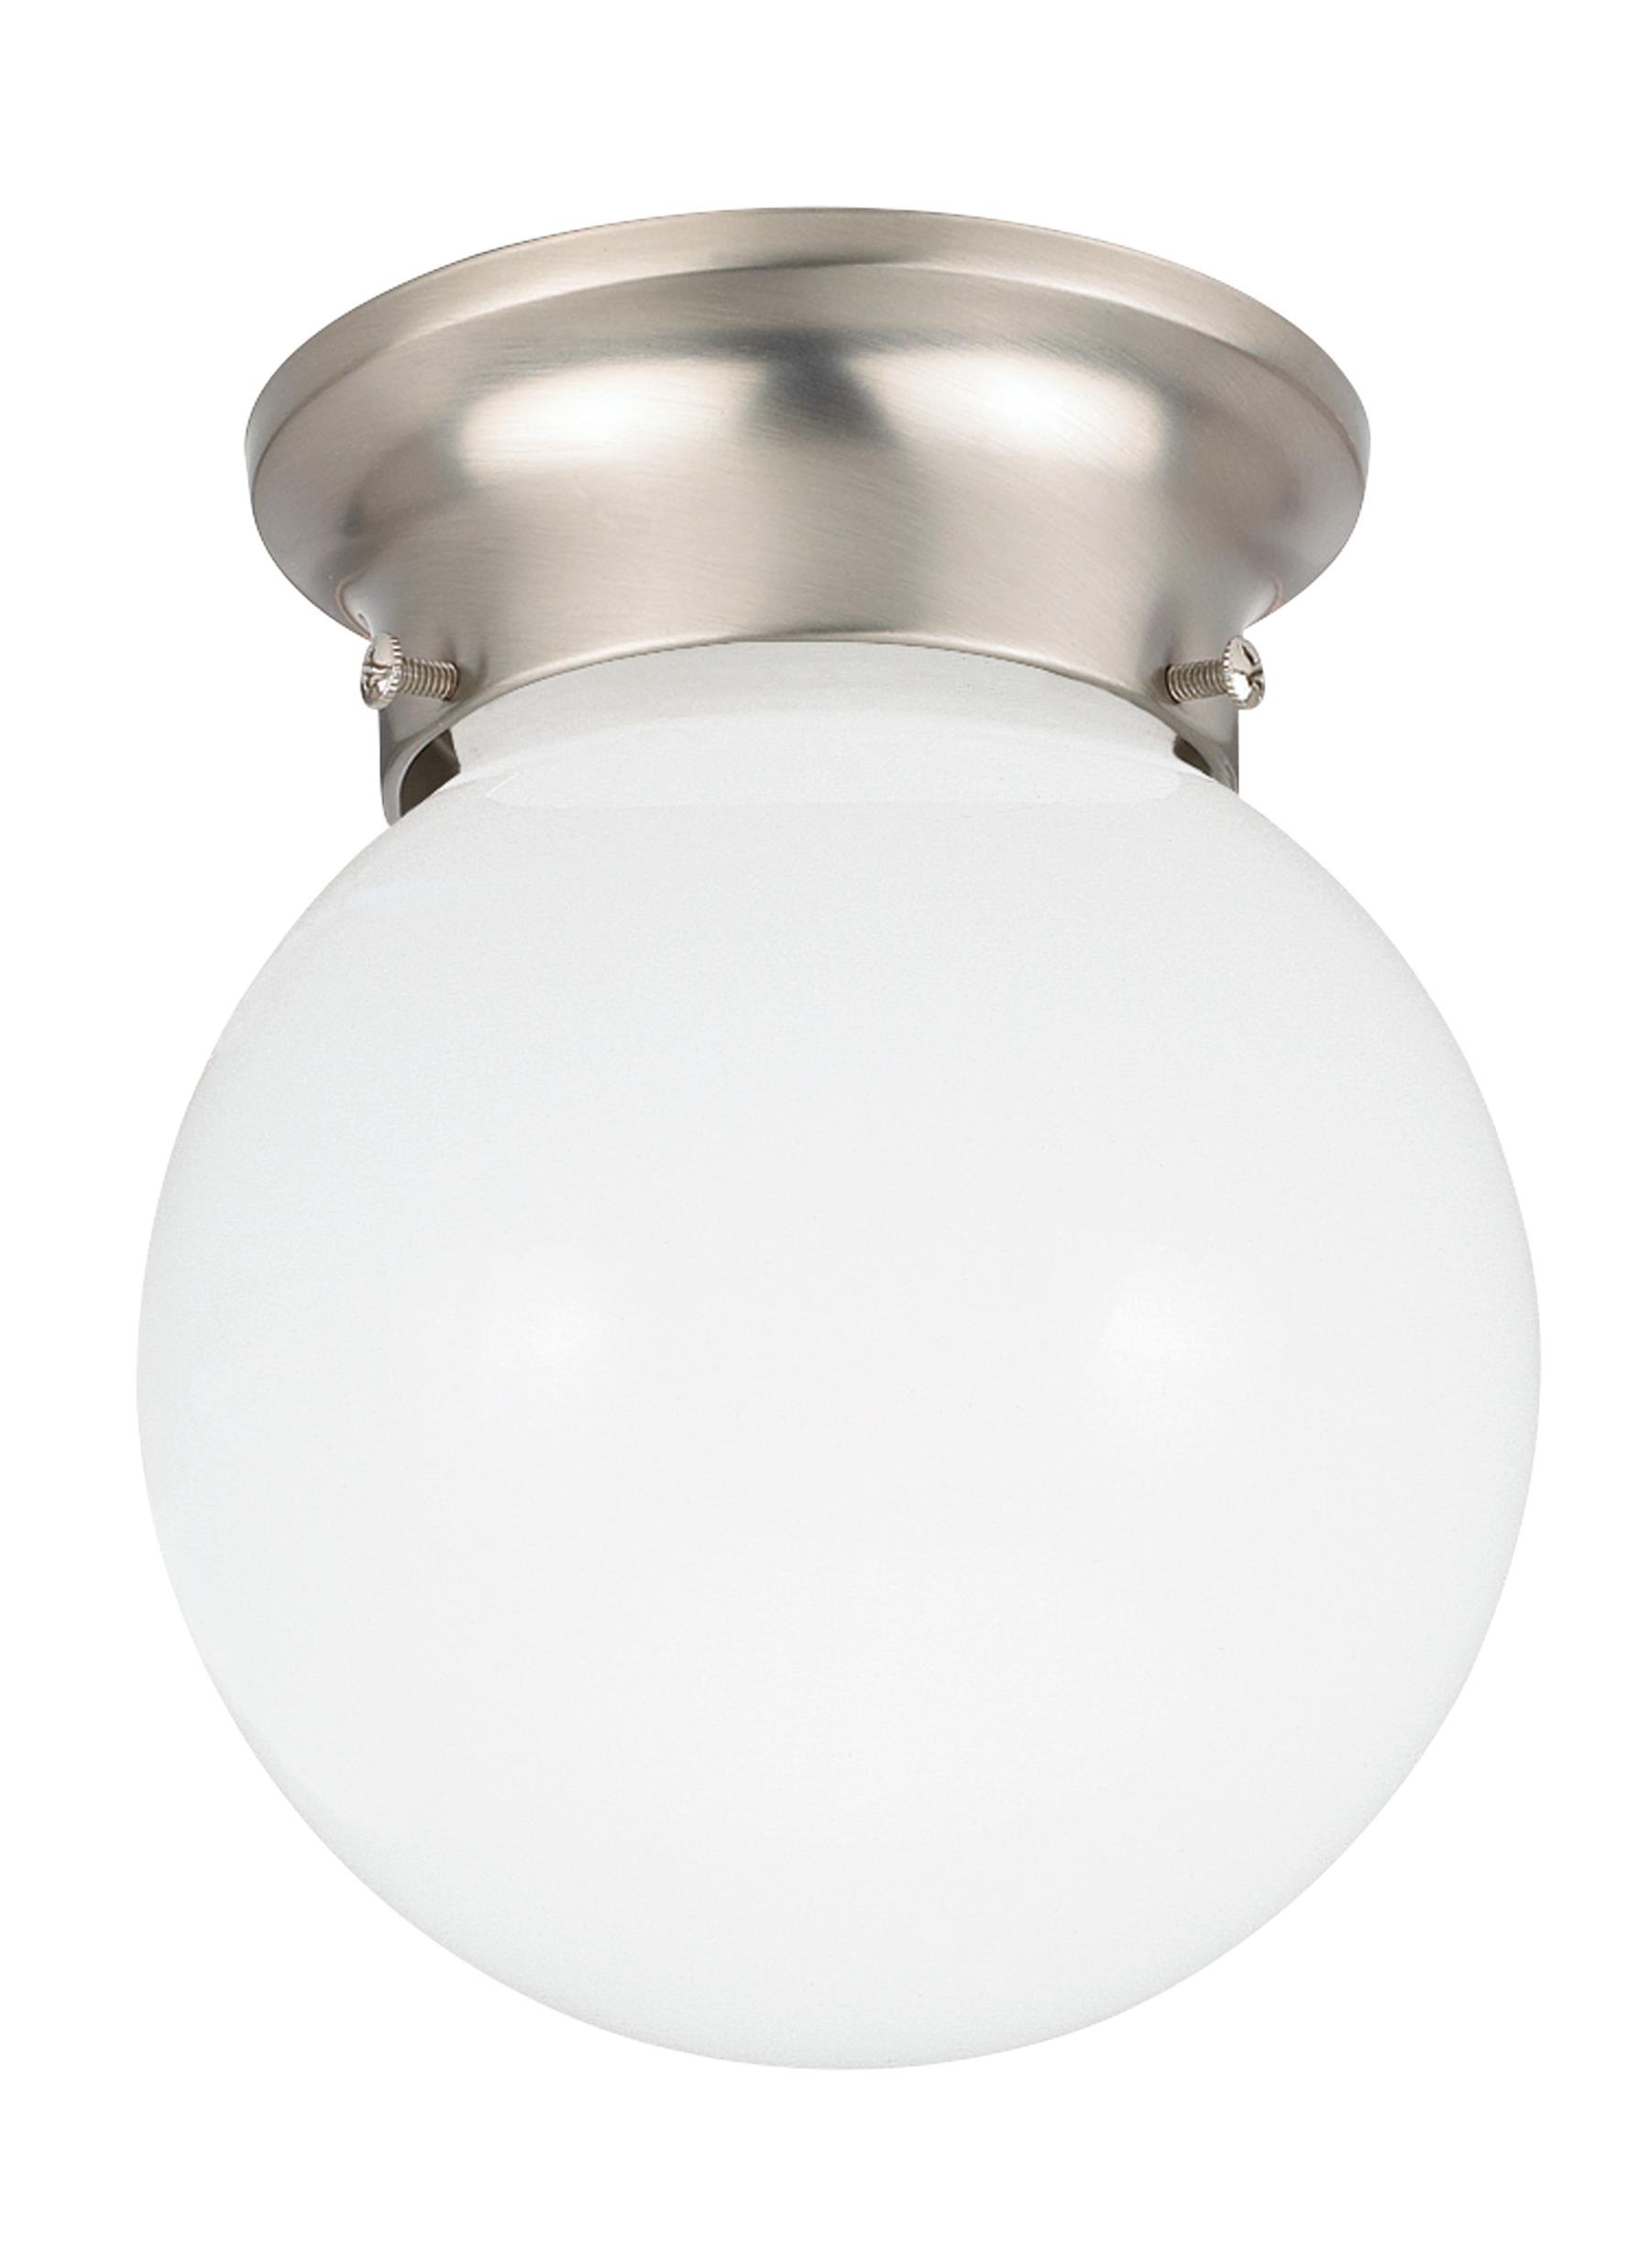 Tomkin One Light Ceiling LED Flush Mount - Brushed Nickel Ceiling Sea Gull Lighting 